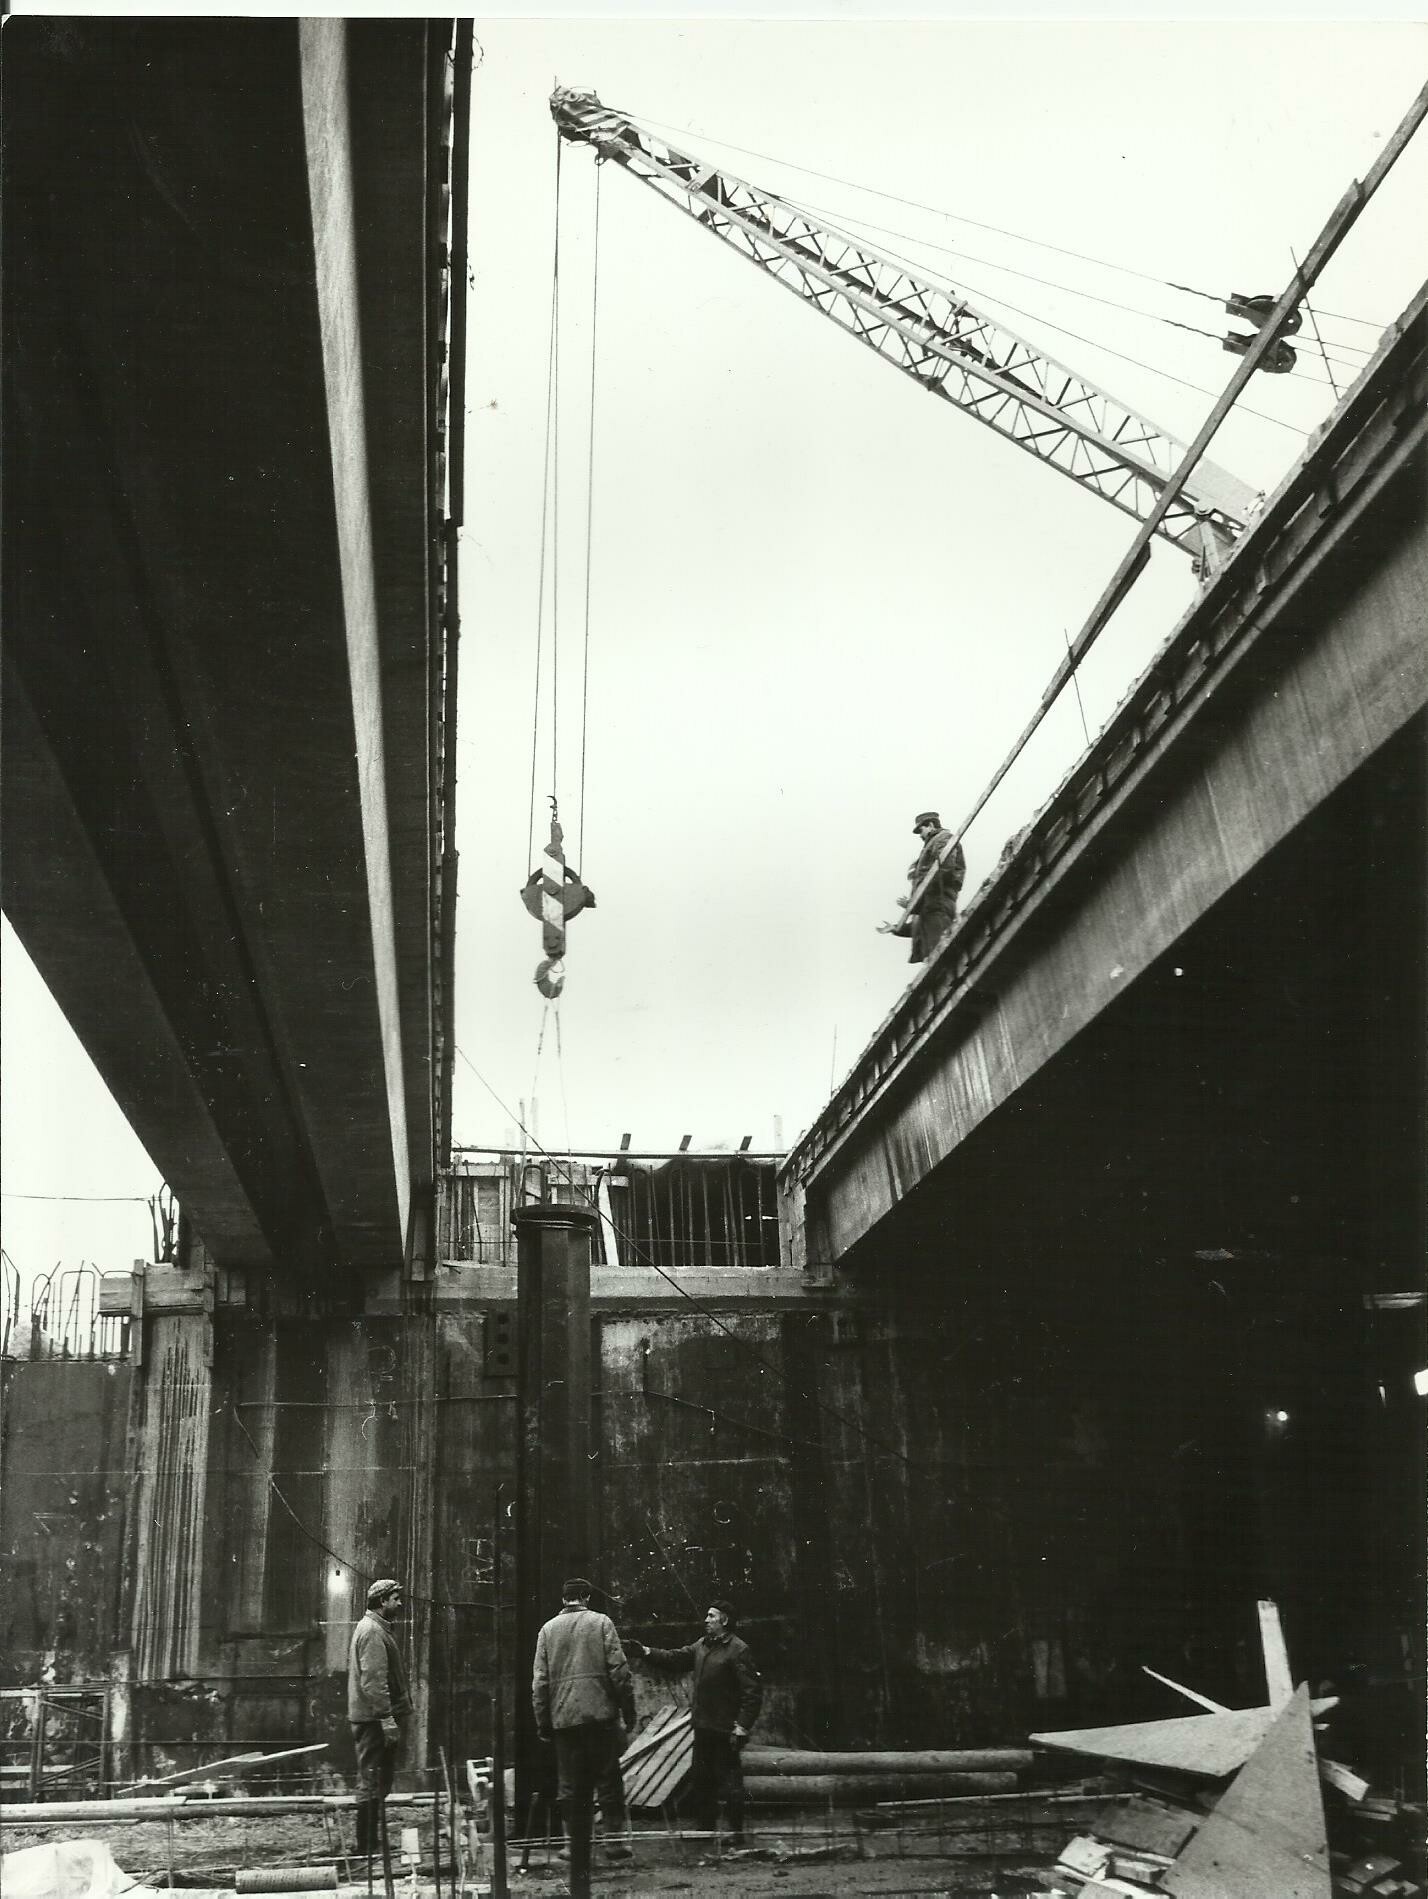 3-as metró építés (Angyalföldi Helytörténeti Gyűjtemény CC BY-NC-SA)